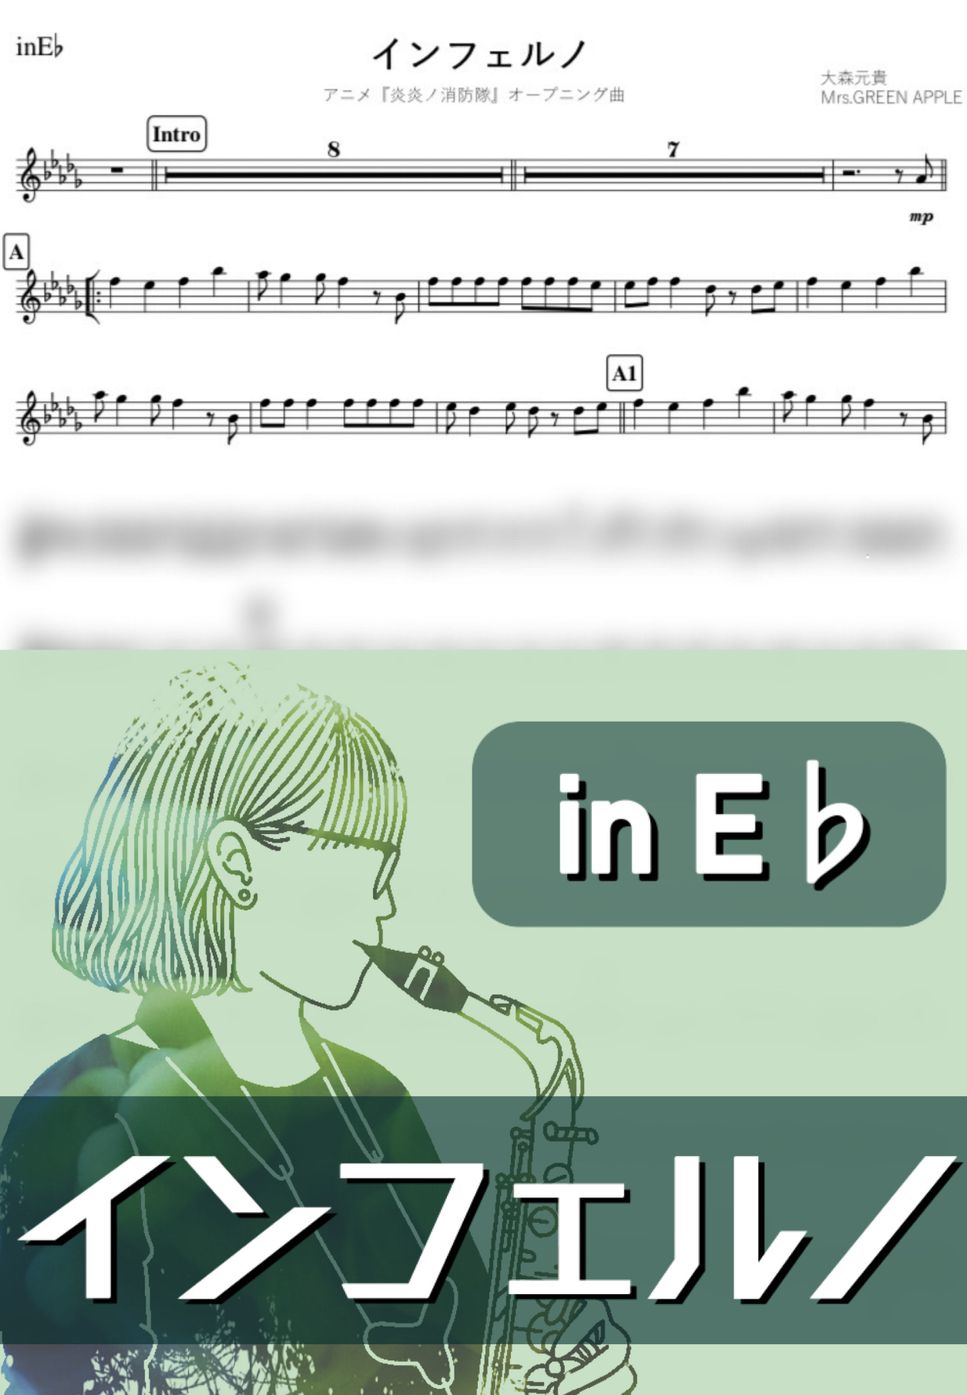 Mrs.GREEN APPLE - インフェルノ (E♭) by kanamusic